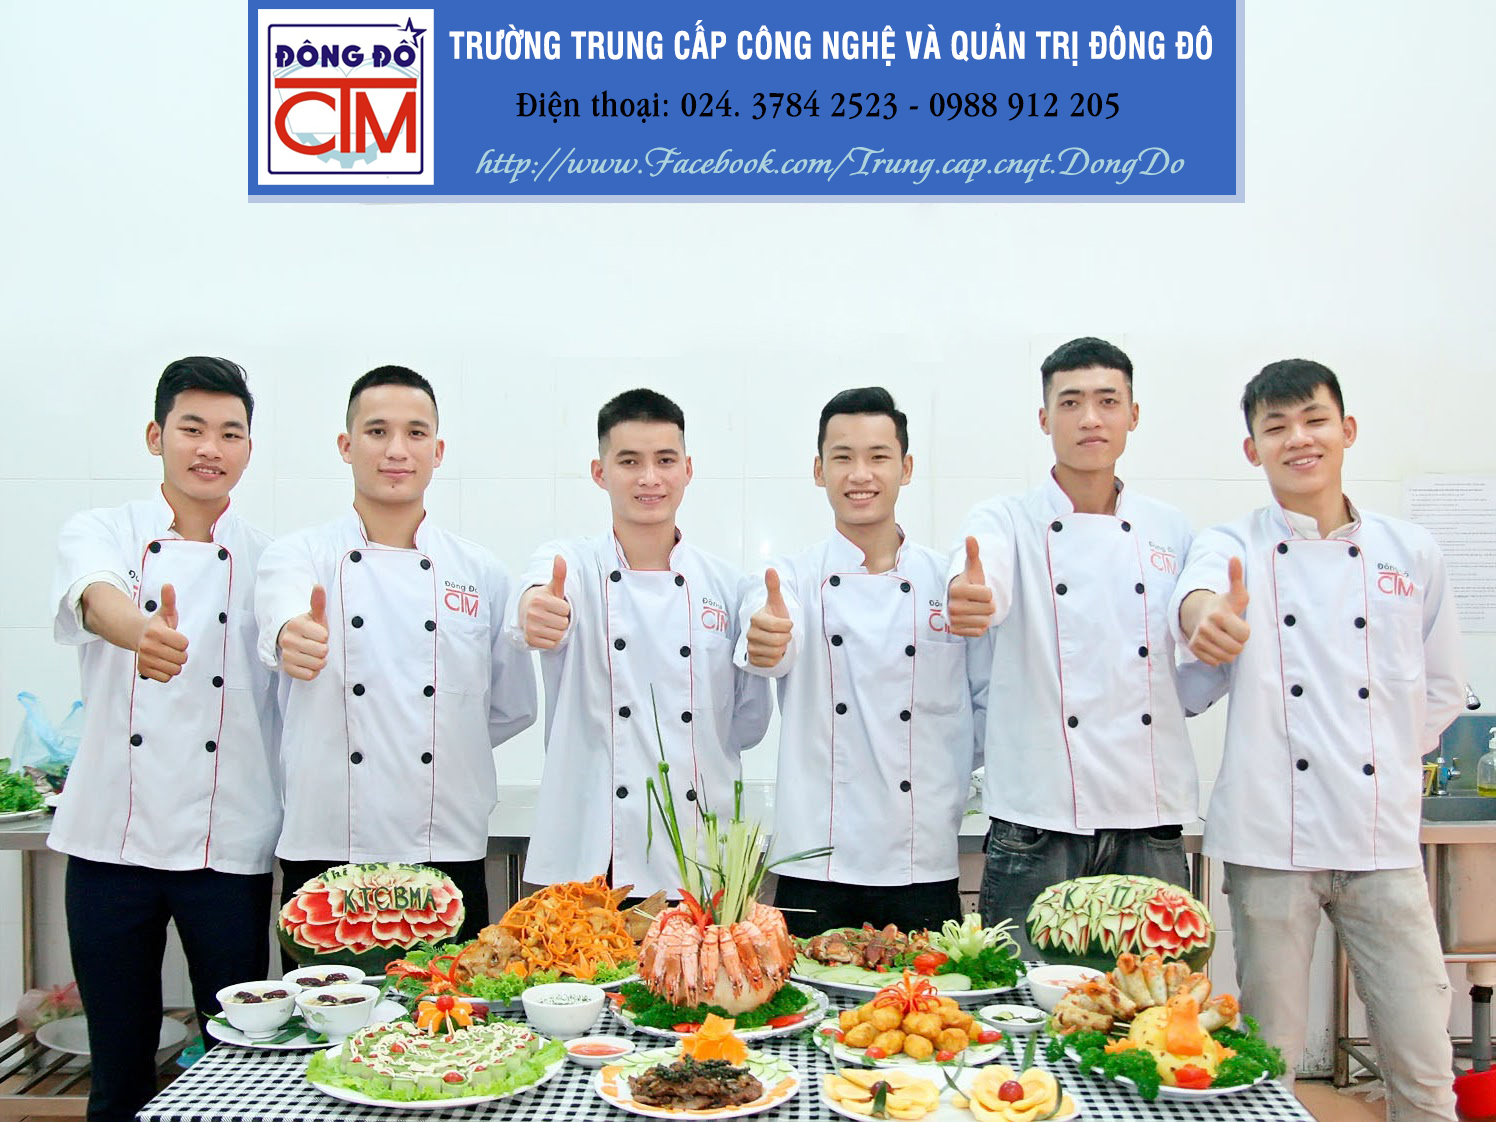 Trung cấp CN&QT Đông Đô là địa chỉ dạy nghề đầu bếp uy tín tại Hà Nội!